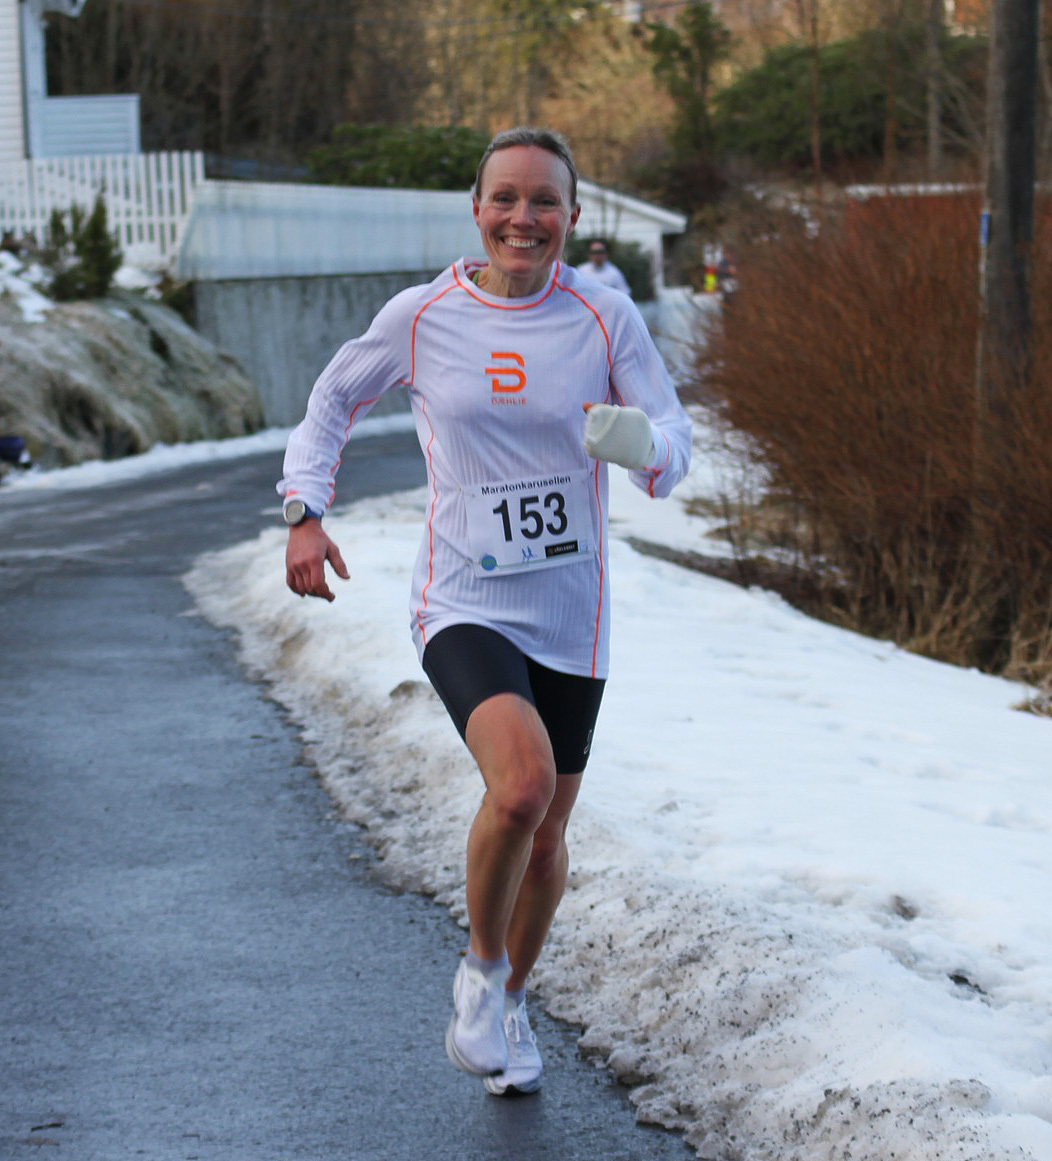 februar-maraton-21km-kvinner-vinner.jpg